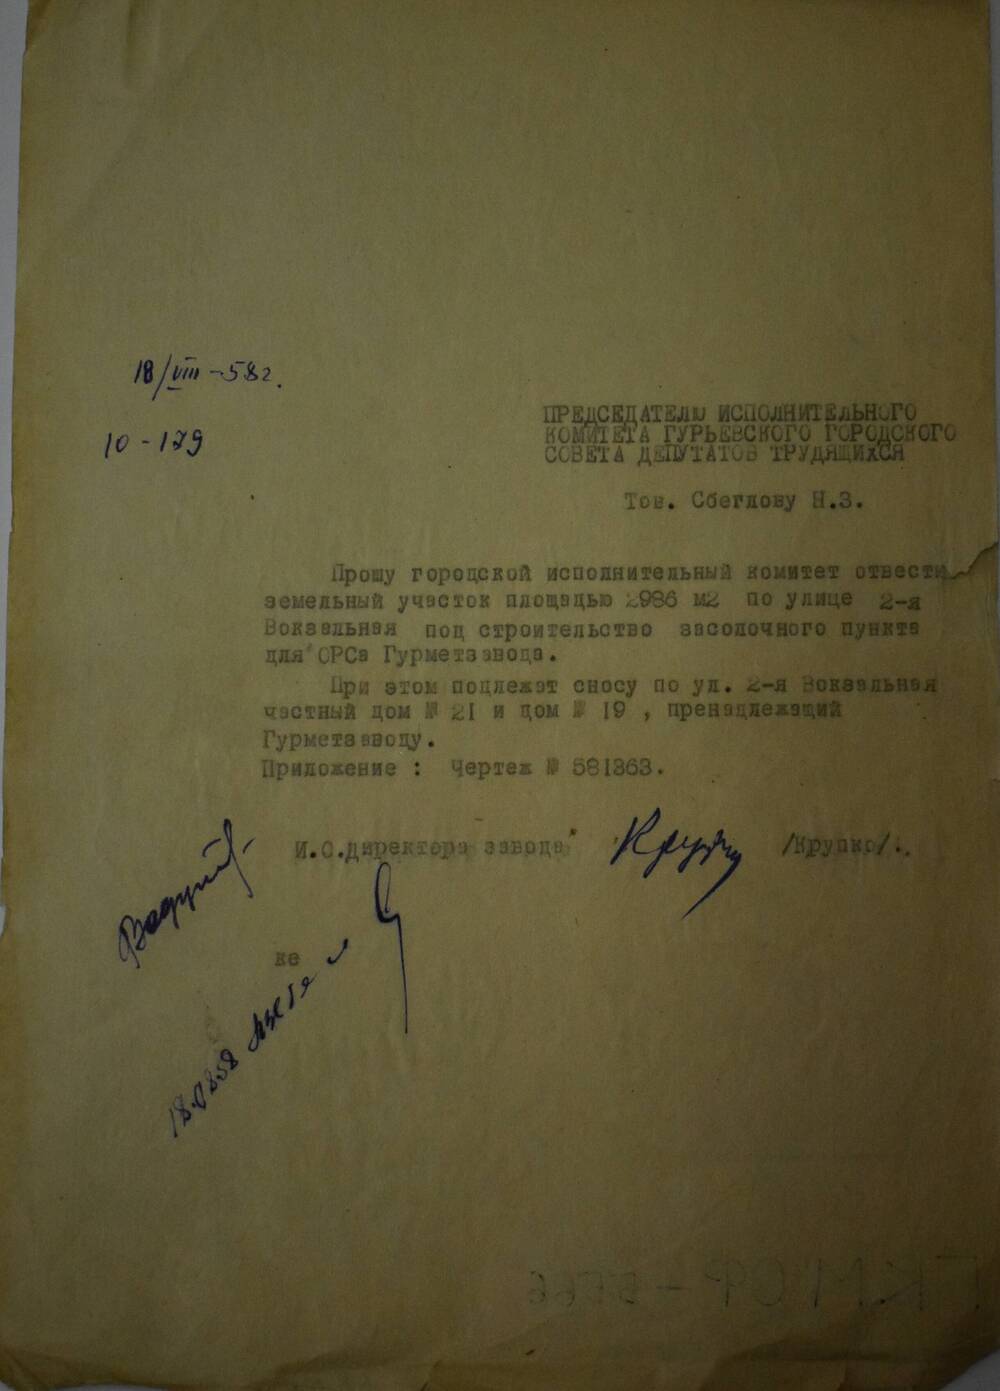 Письмо № 10-179 Гурьевского Исполкома от 18.08.1958 Об отводе земельного участка под строительство засолочного пункта для ОРСа